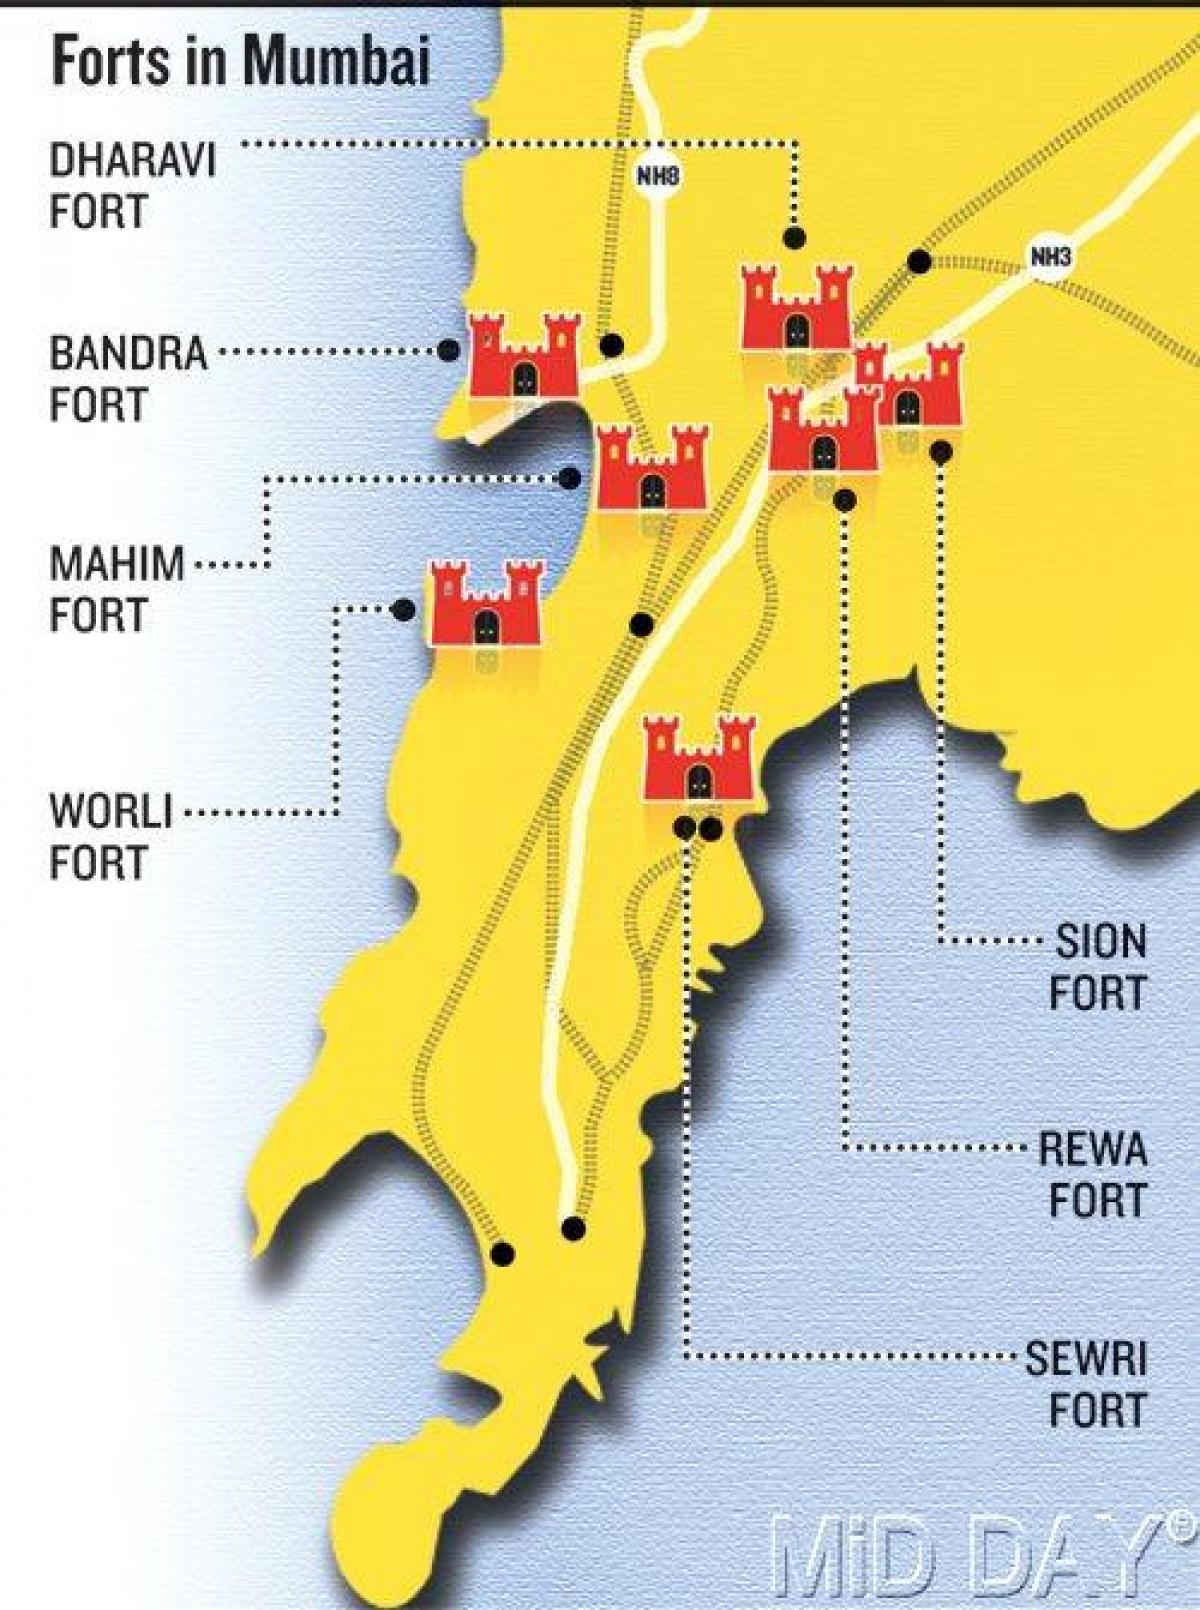 Mumbai fort carte de la région